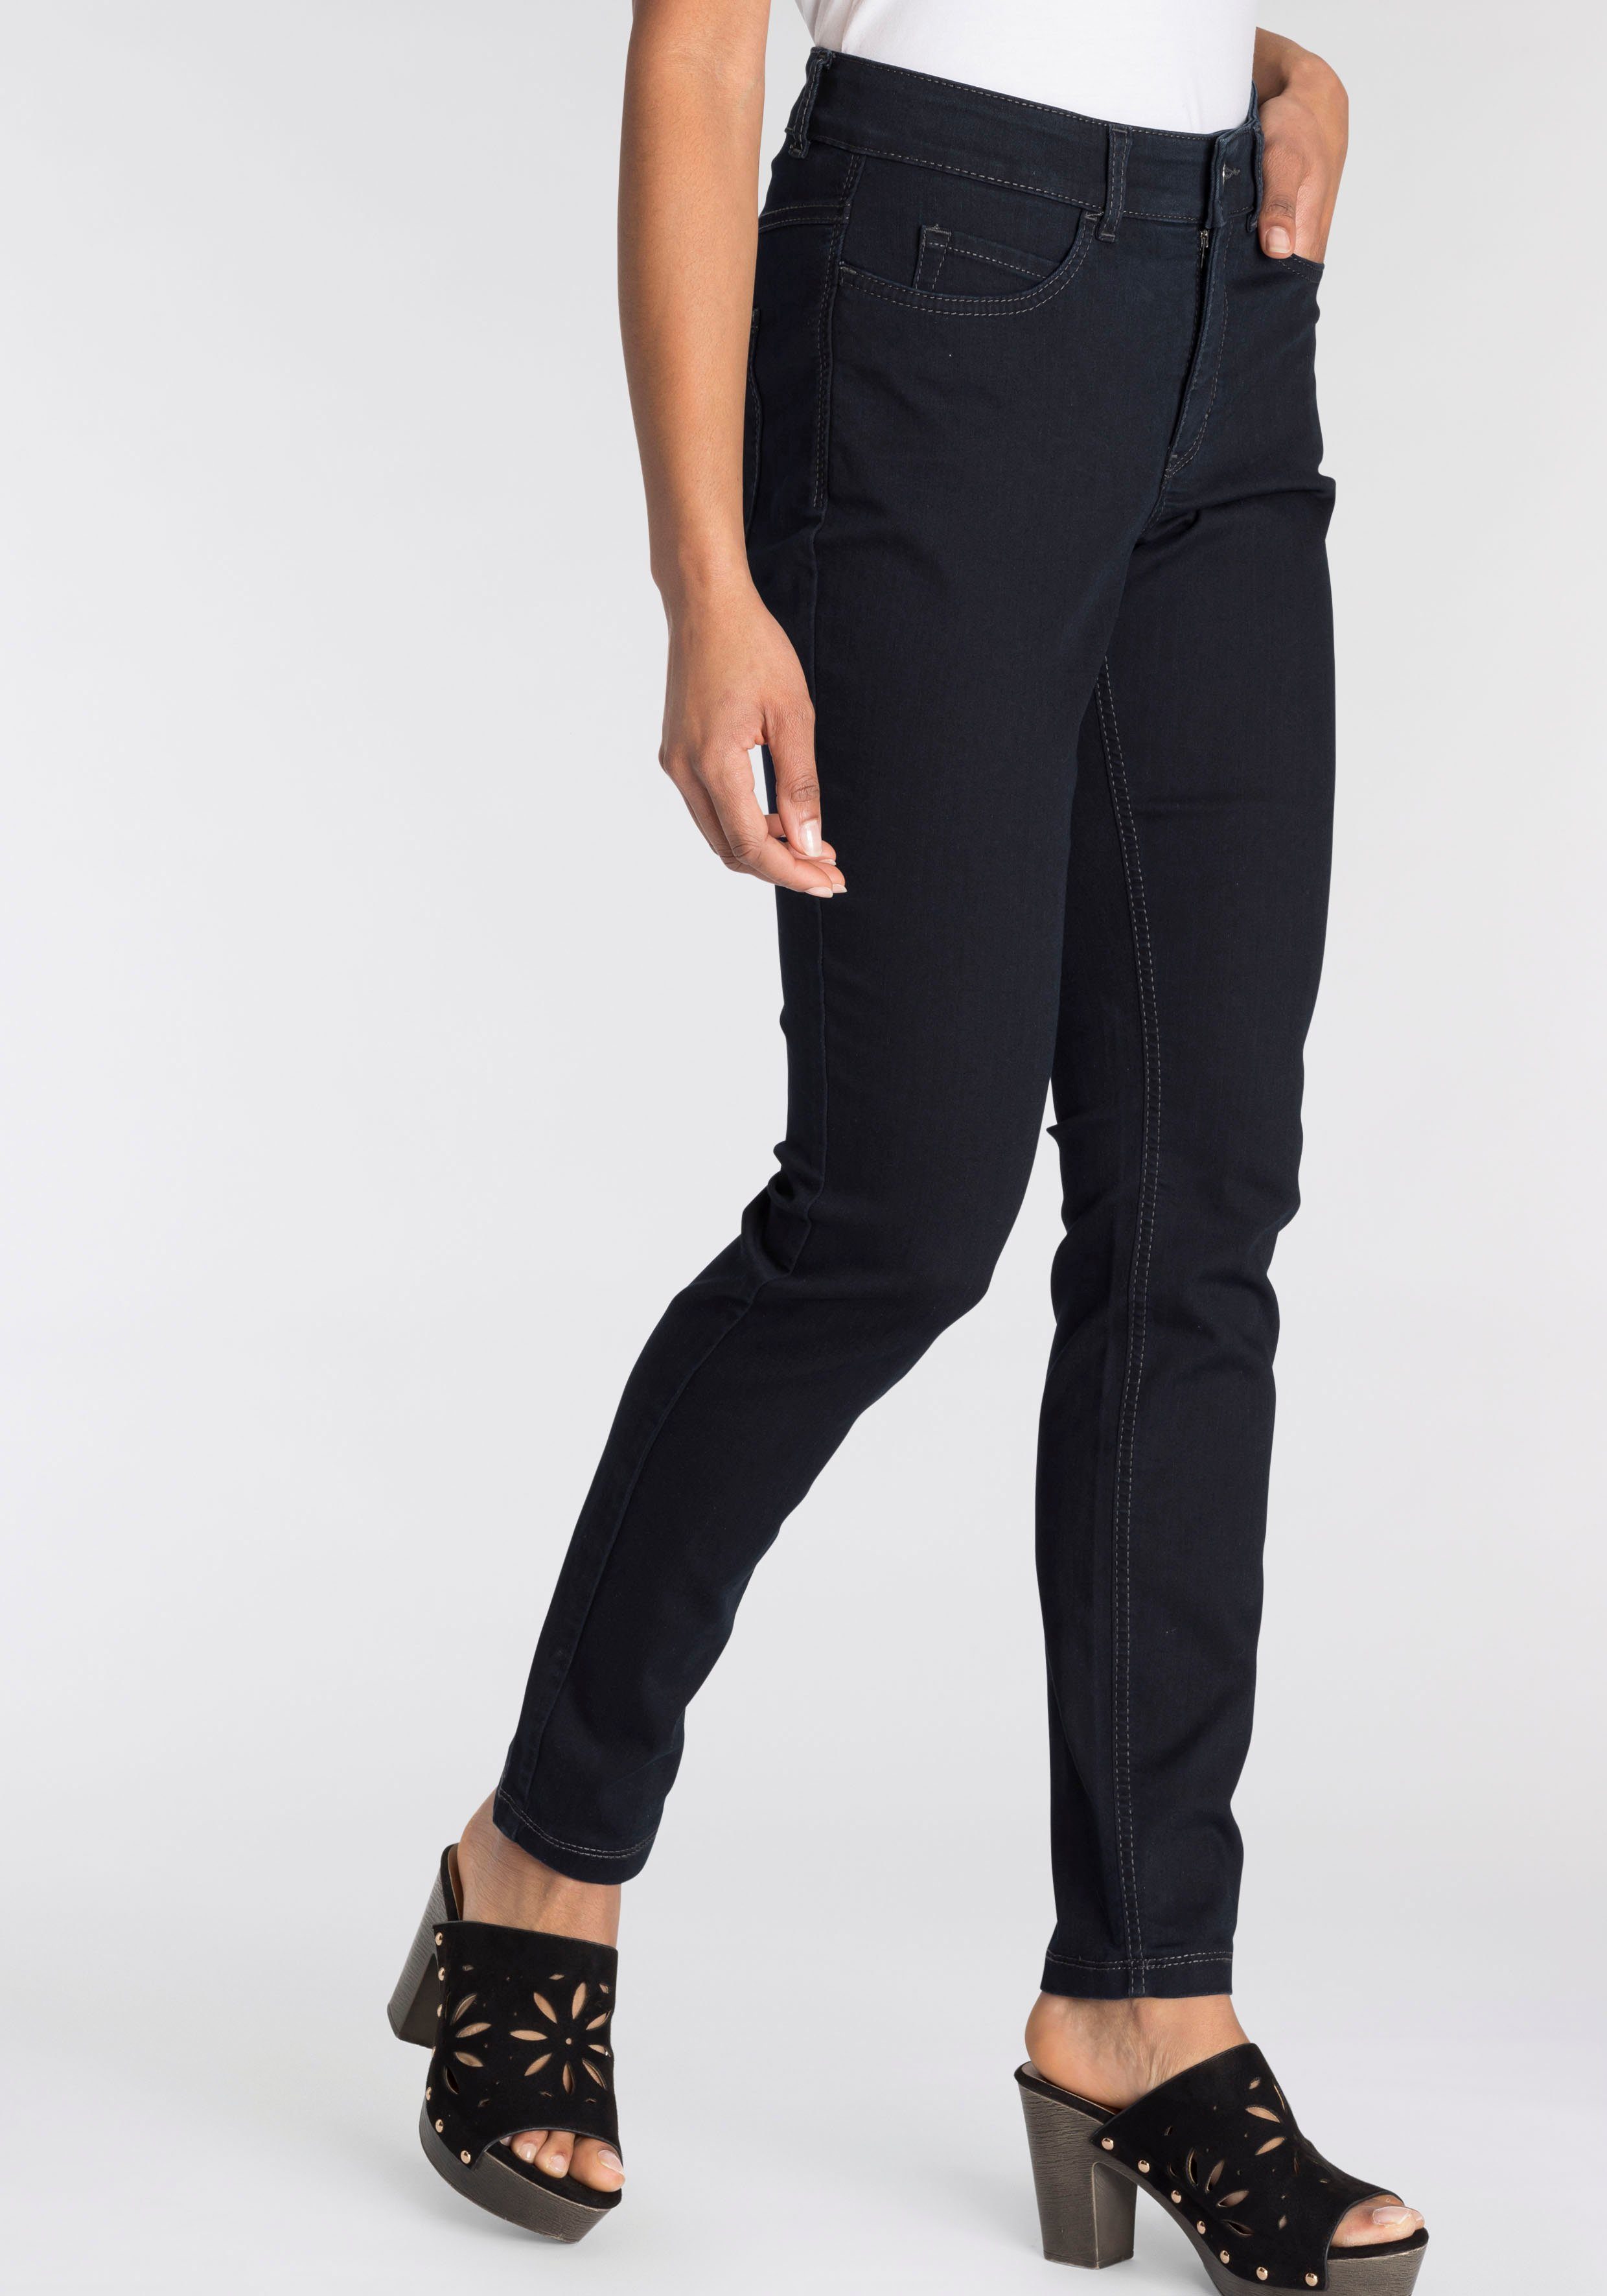 MAC Skinny-fit-Jeans bequem Power-Stretch Qualität Hiperstretch-Skinny blue dark Tag sitzt den ganzen rinsed